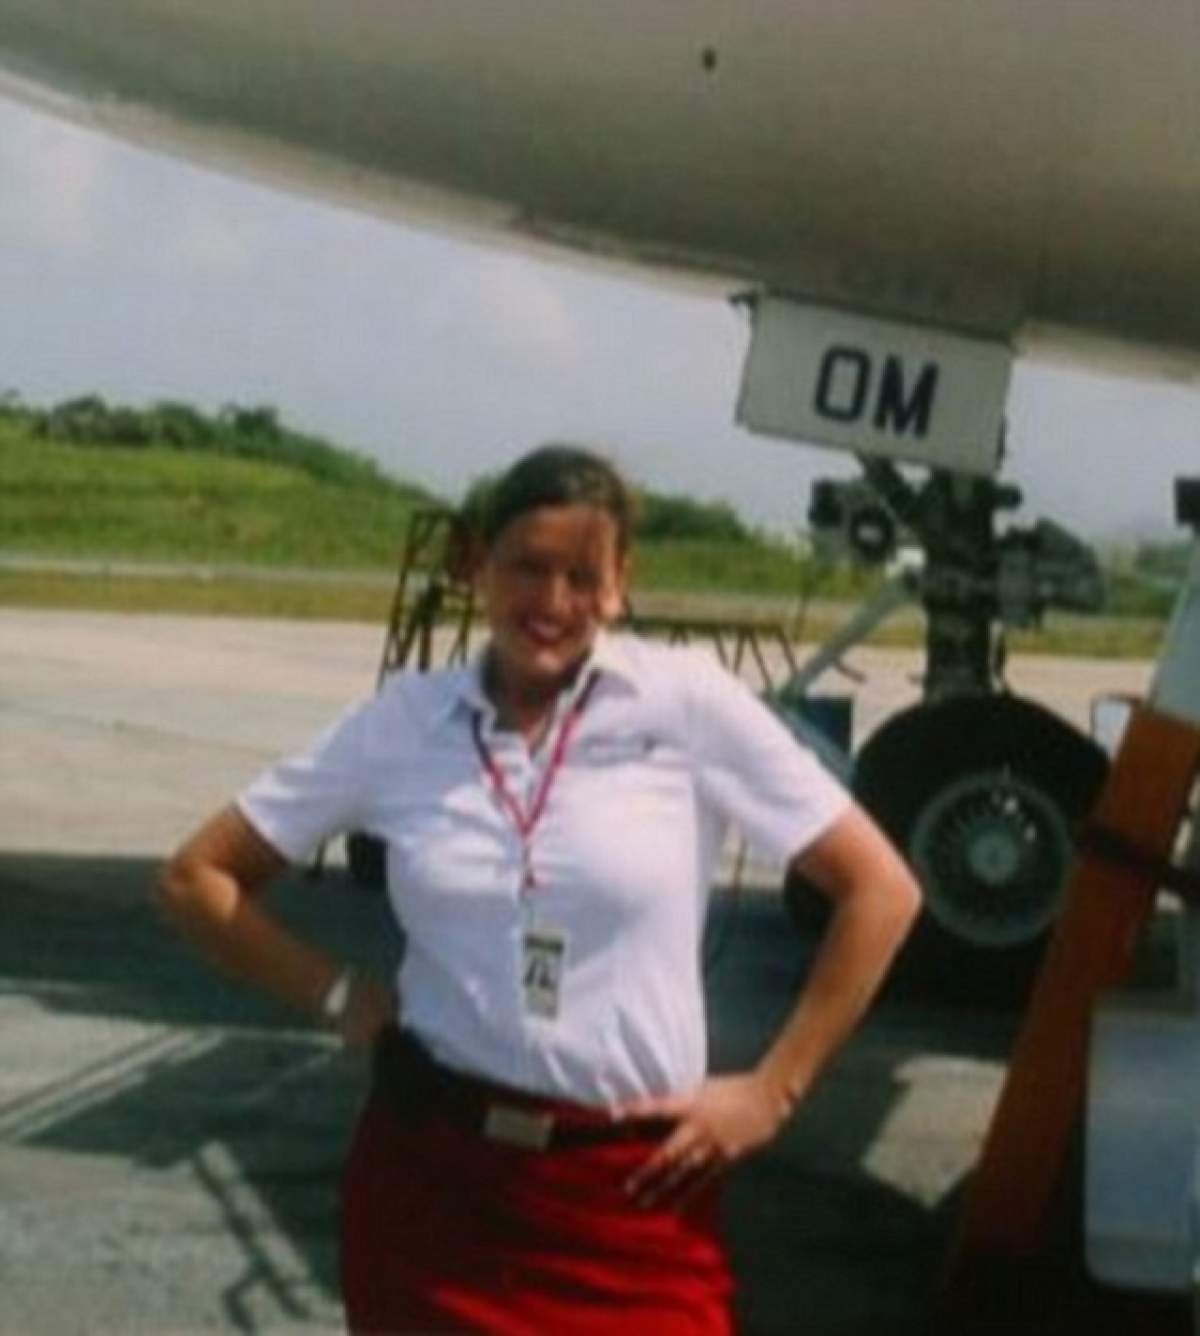 Mărturisirile uluitoare ale unei stewardese: "Am făcut sex cu pilotul în timp ce eram în aer!"